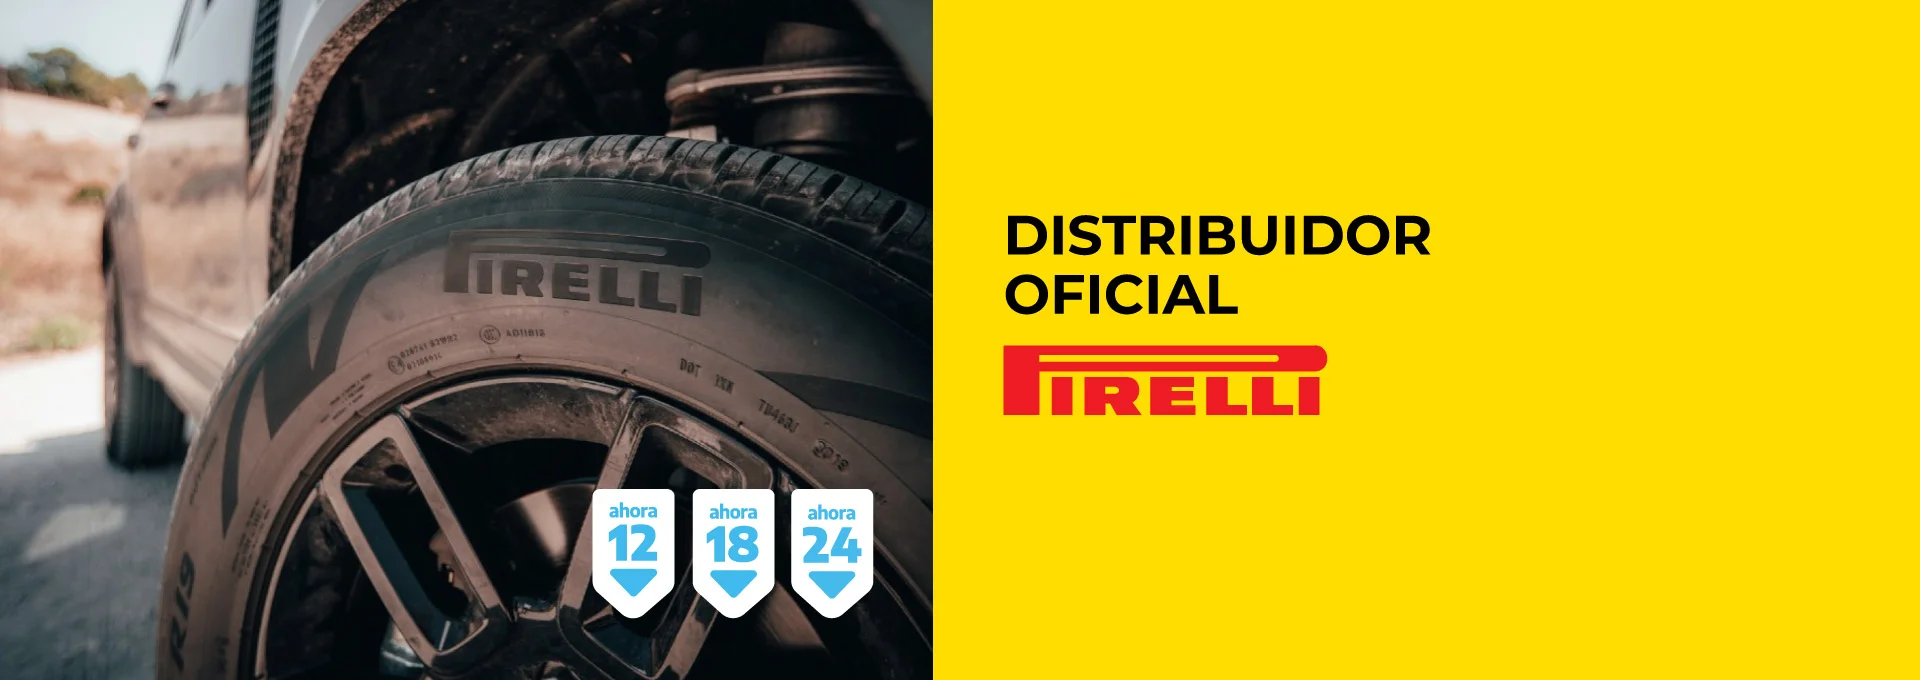 Neumáticos – Distribuidor oficial de Neumáticos Pirelli y Prometeon. Servicios de Alineación computarizada 3D, Balanceo, Gomería y ligera.